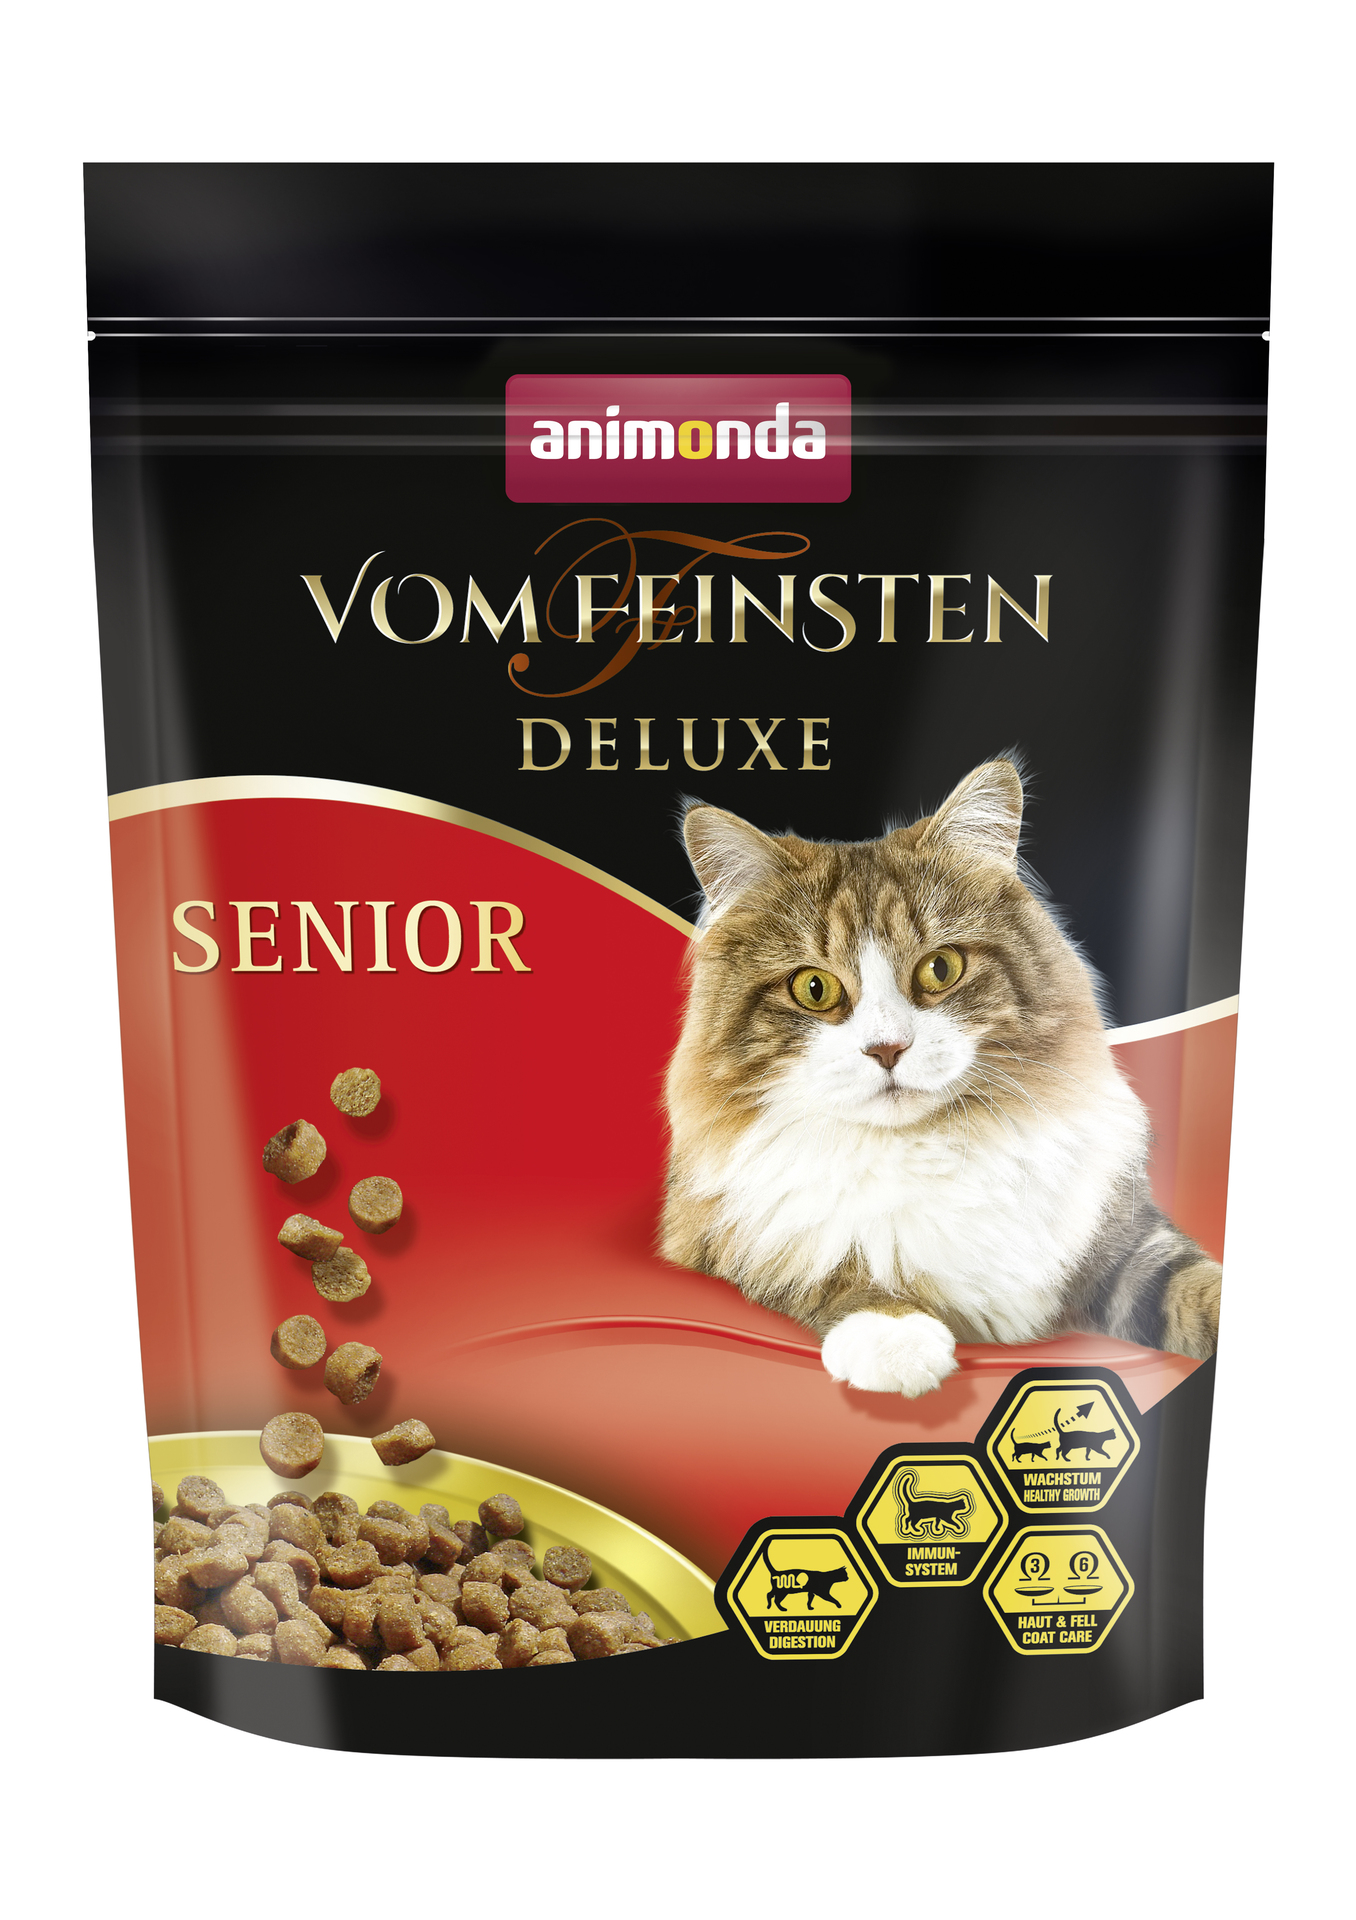 animonda petcare gmbh Cat Vom Feinsten Senior Deluxe Senior